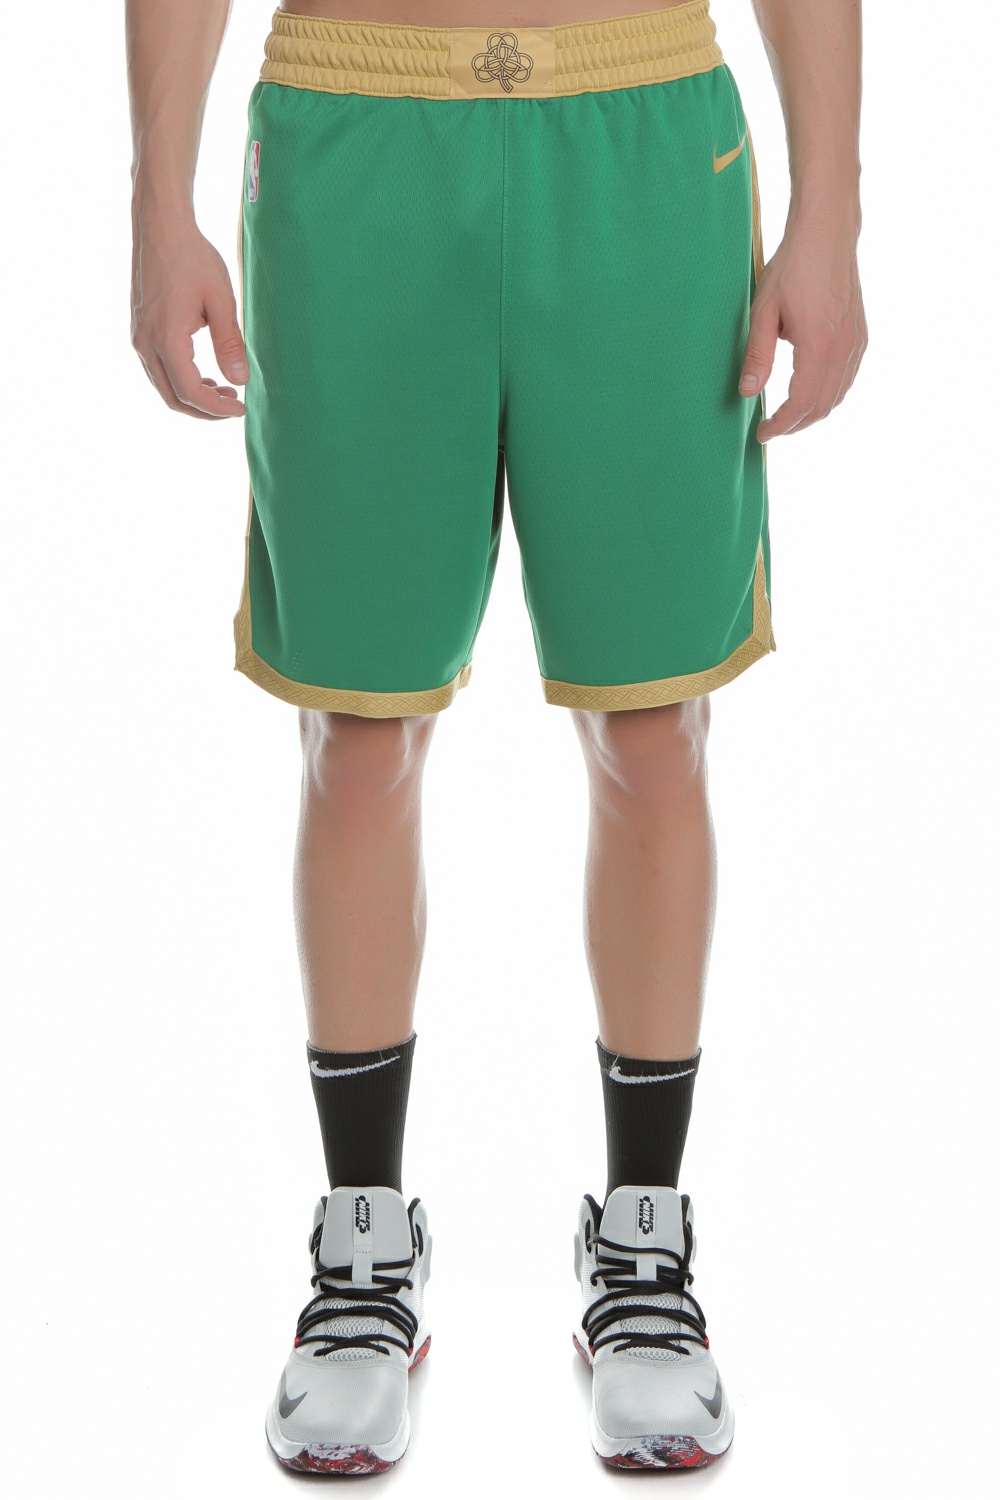 Ανδρικά/Ρούχα/Σορτς-Βερμούδες/Αθλητικά NIKE - Ανδρικό αθλητικό σορτς NIKE NBA Swingman πράσινο